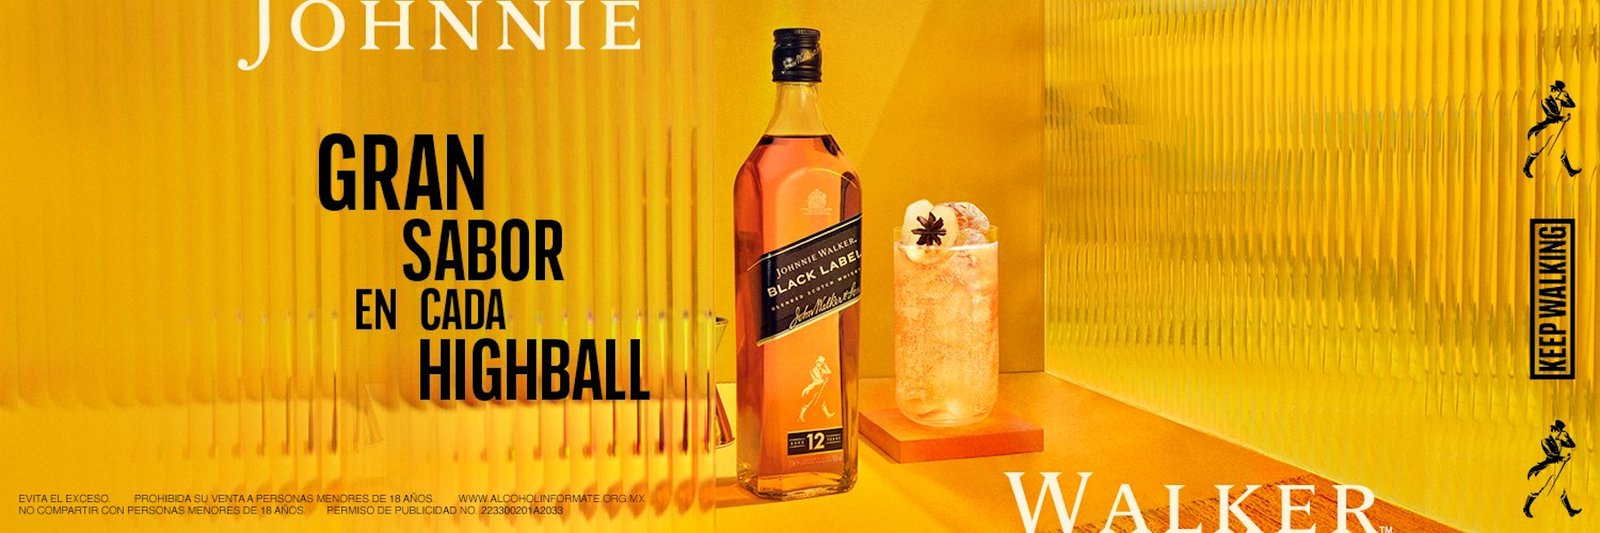 Johnnie Walker El whisky más vendido del mundo